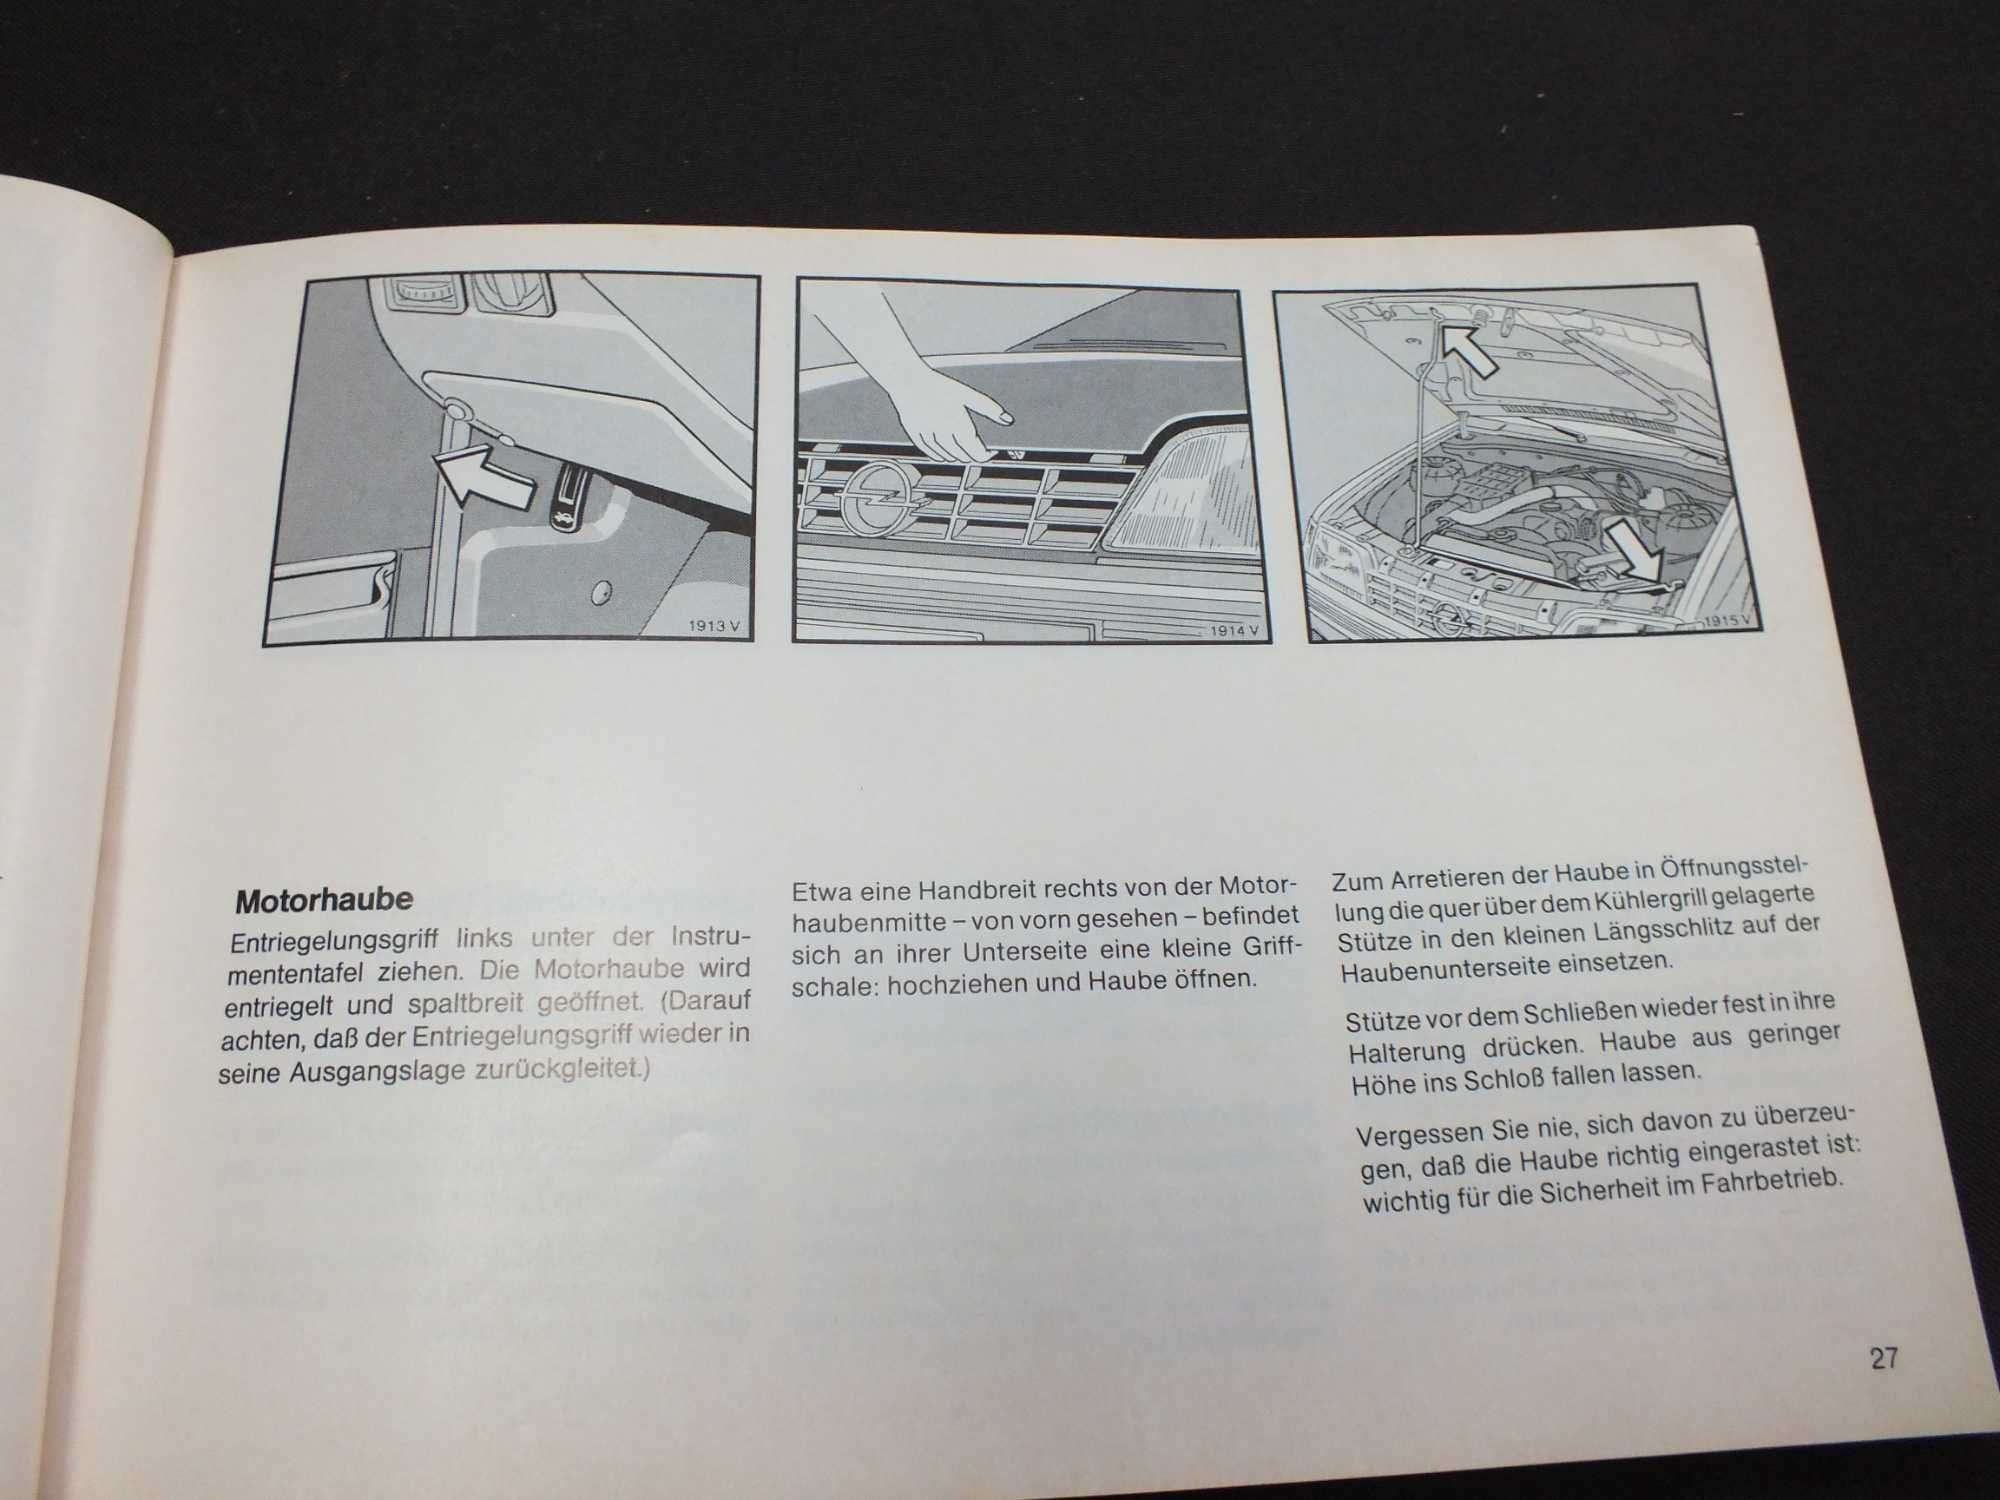 Instrukcja obsługi OPEL REKORD fabryczna 1983 r L